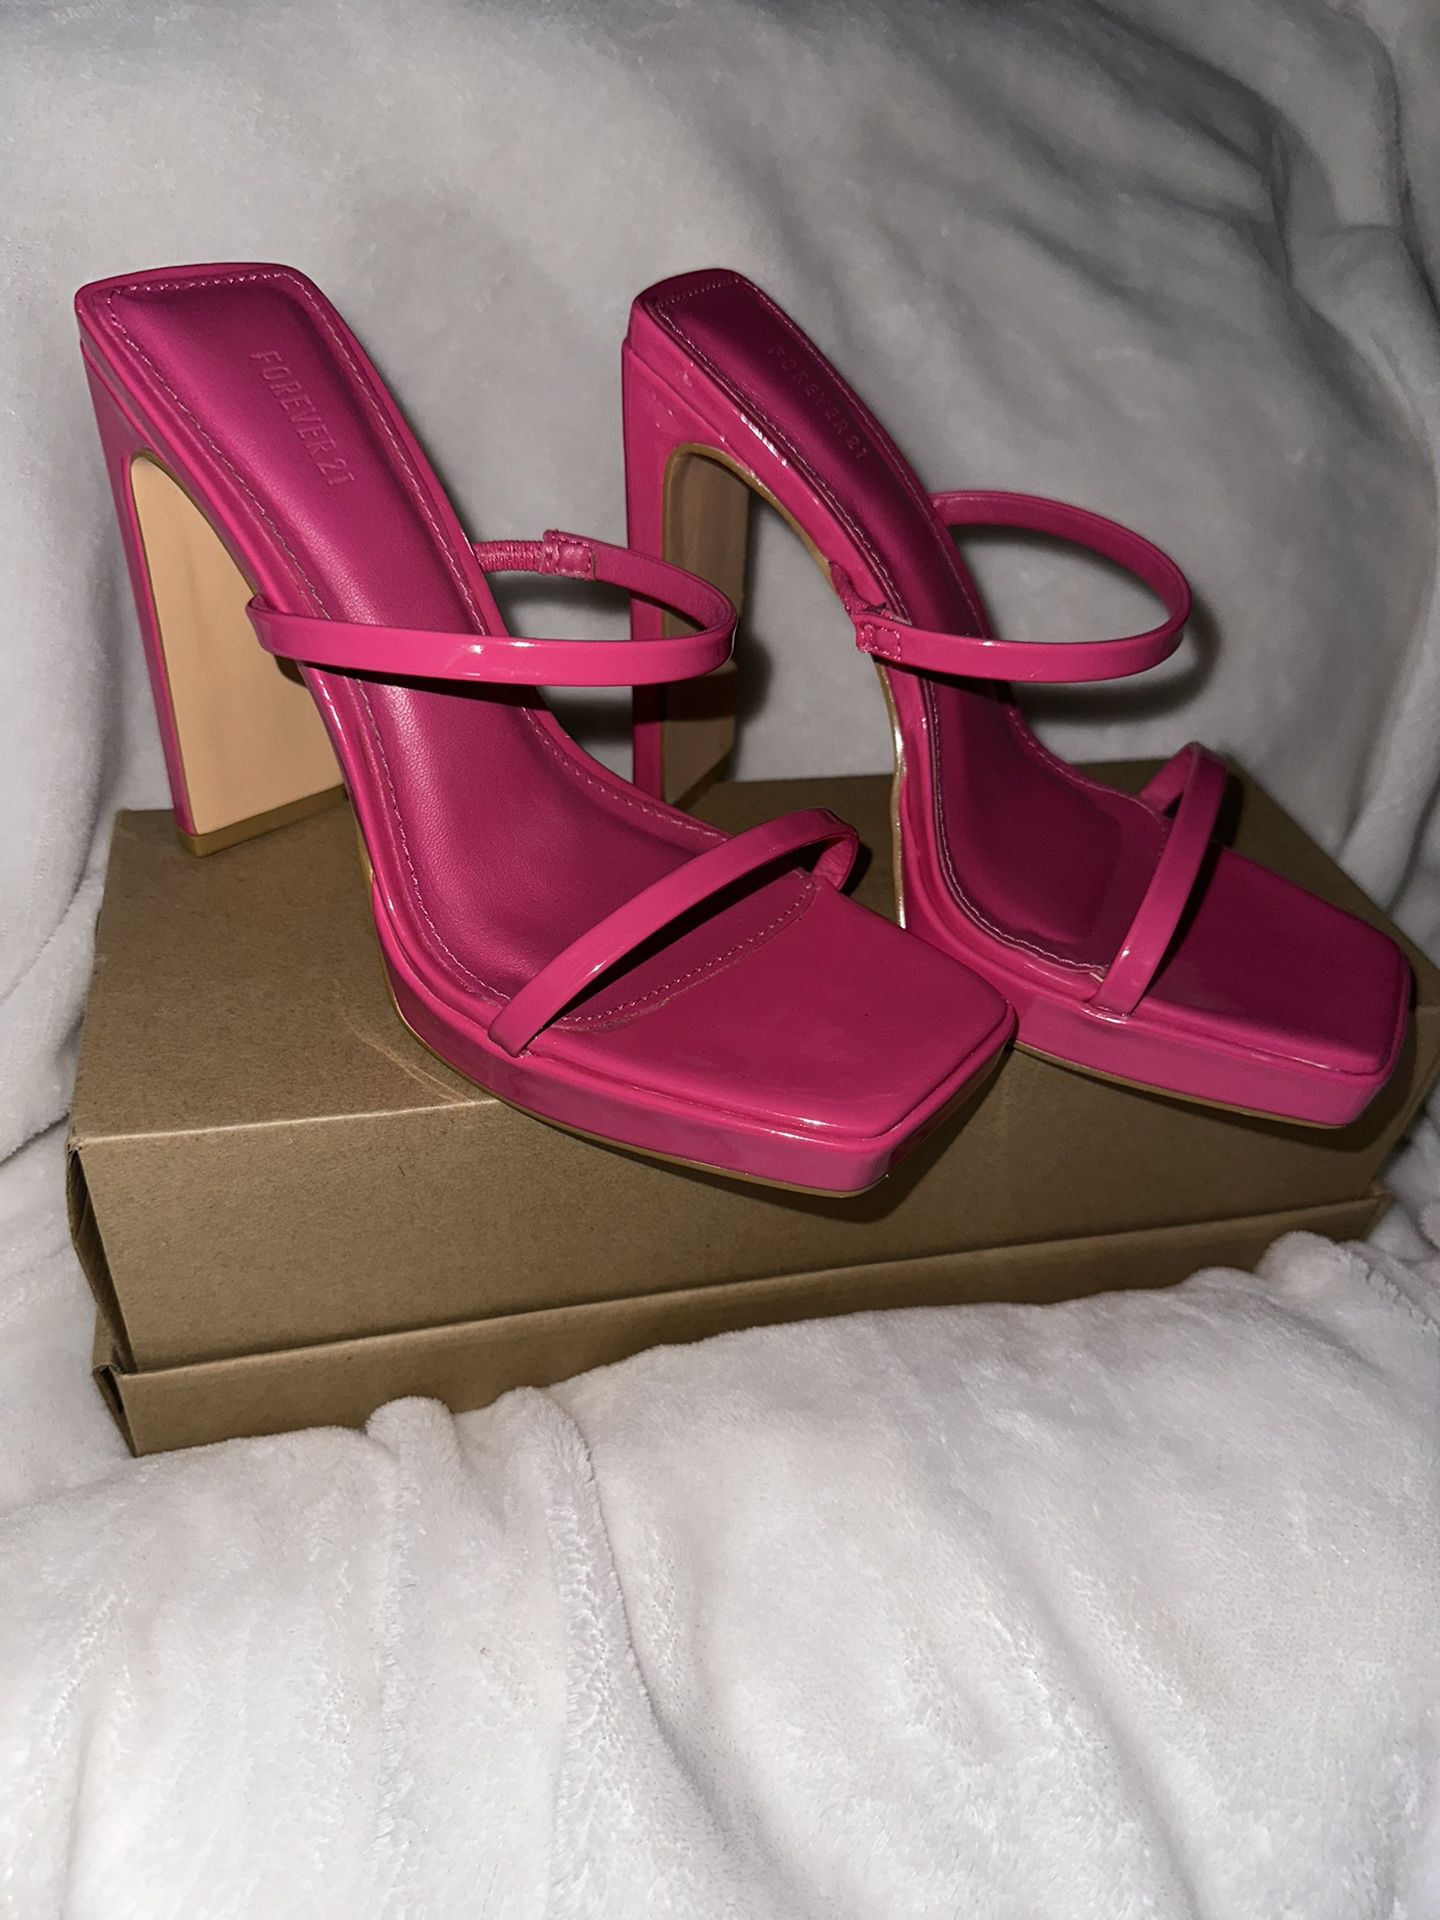 Pink Heels (6.5)